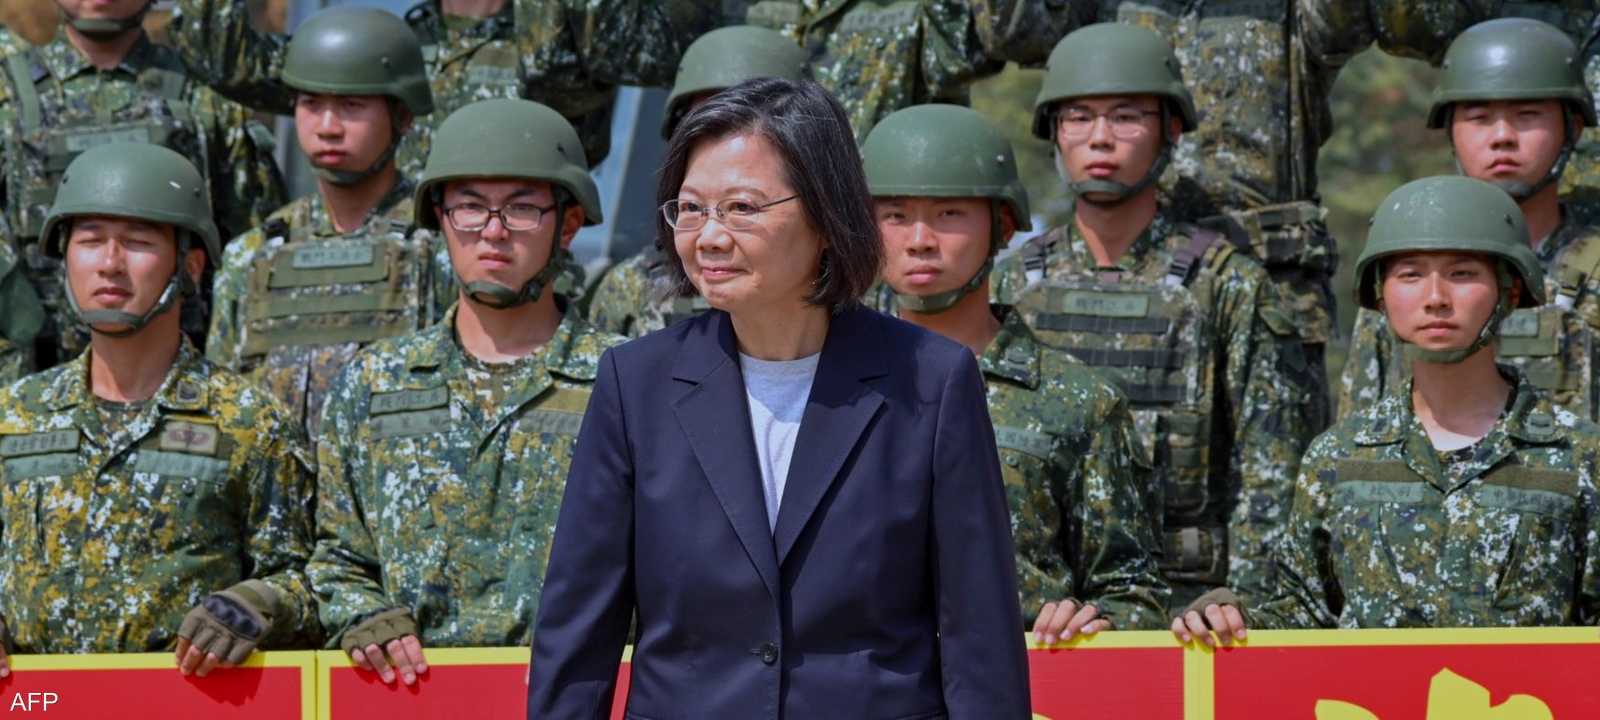 رئيسة تايوان تساي إنغ وين